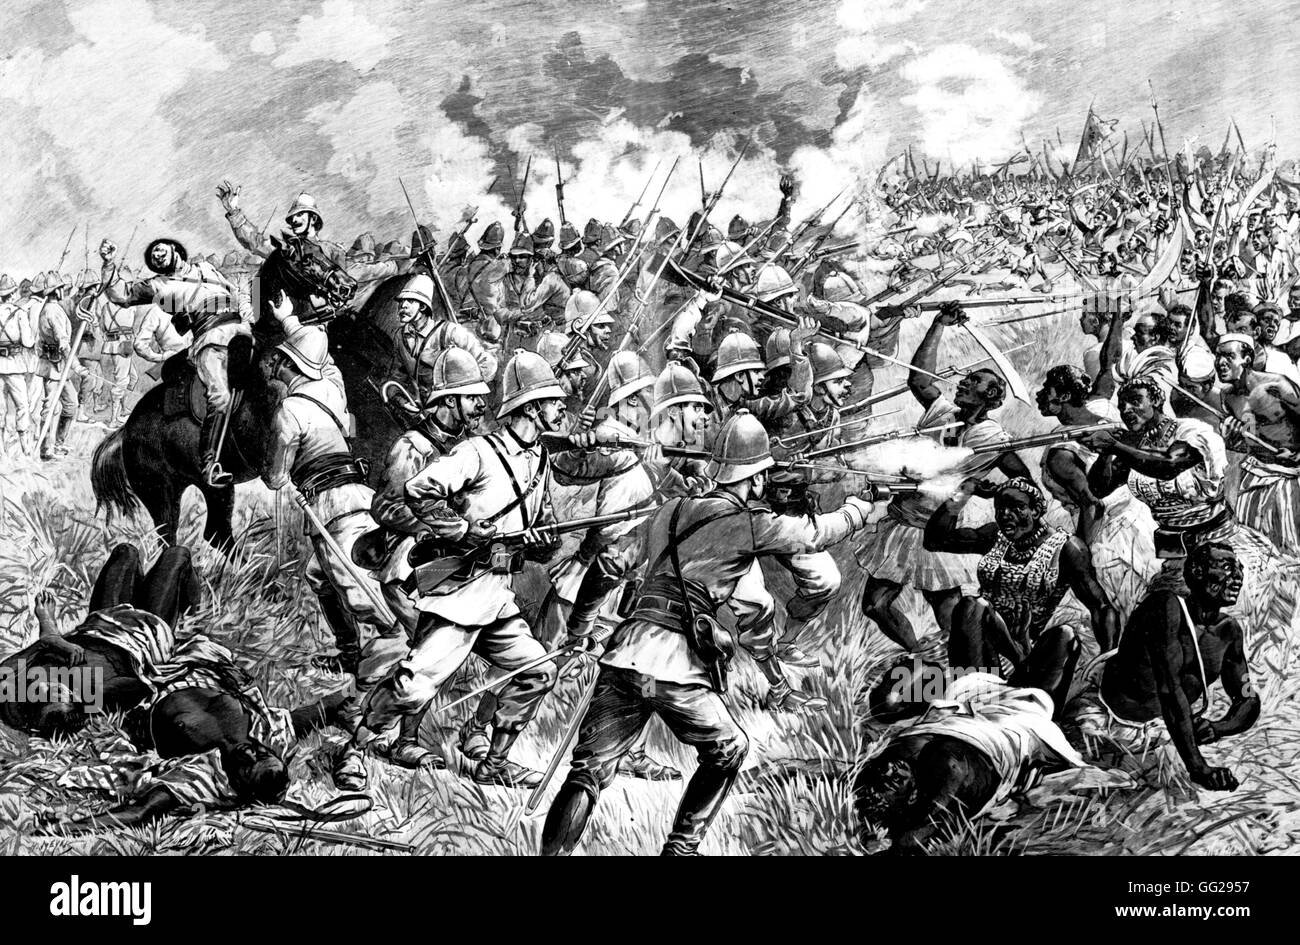 Dahomey. Die Schlacht von Dogra, Tod des Kommandanten Faurax. 9. Oktober 1892 Frankreich - Kolonisation Stockfoto